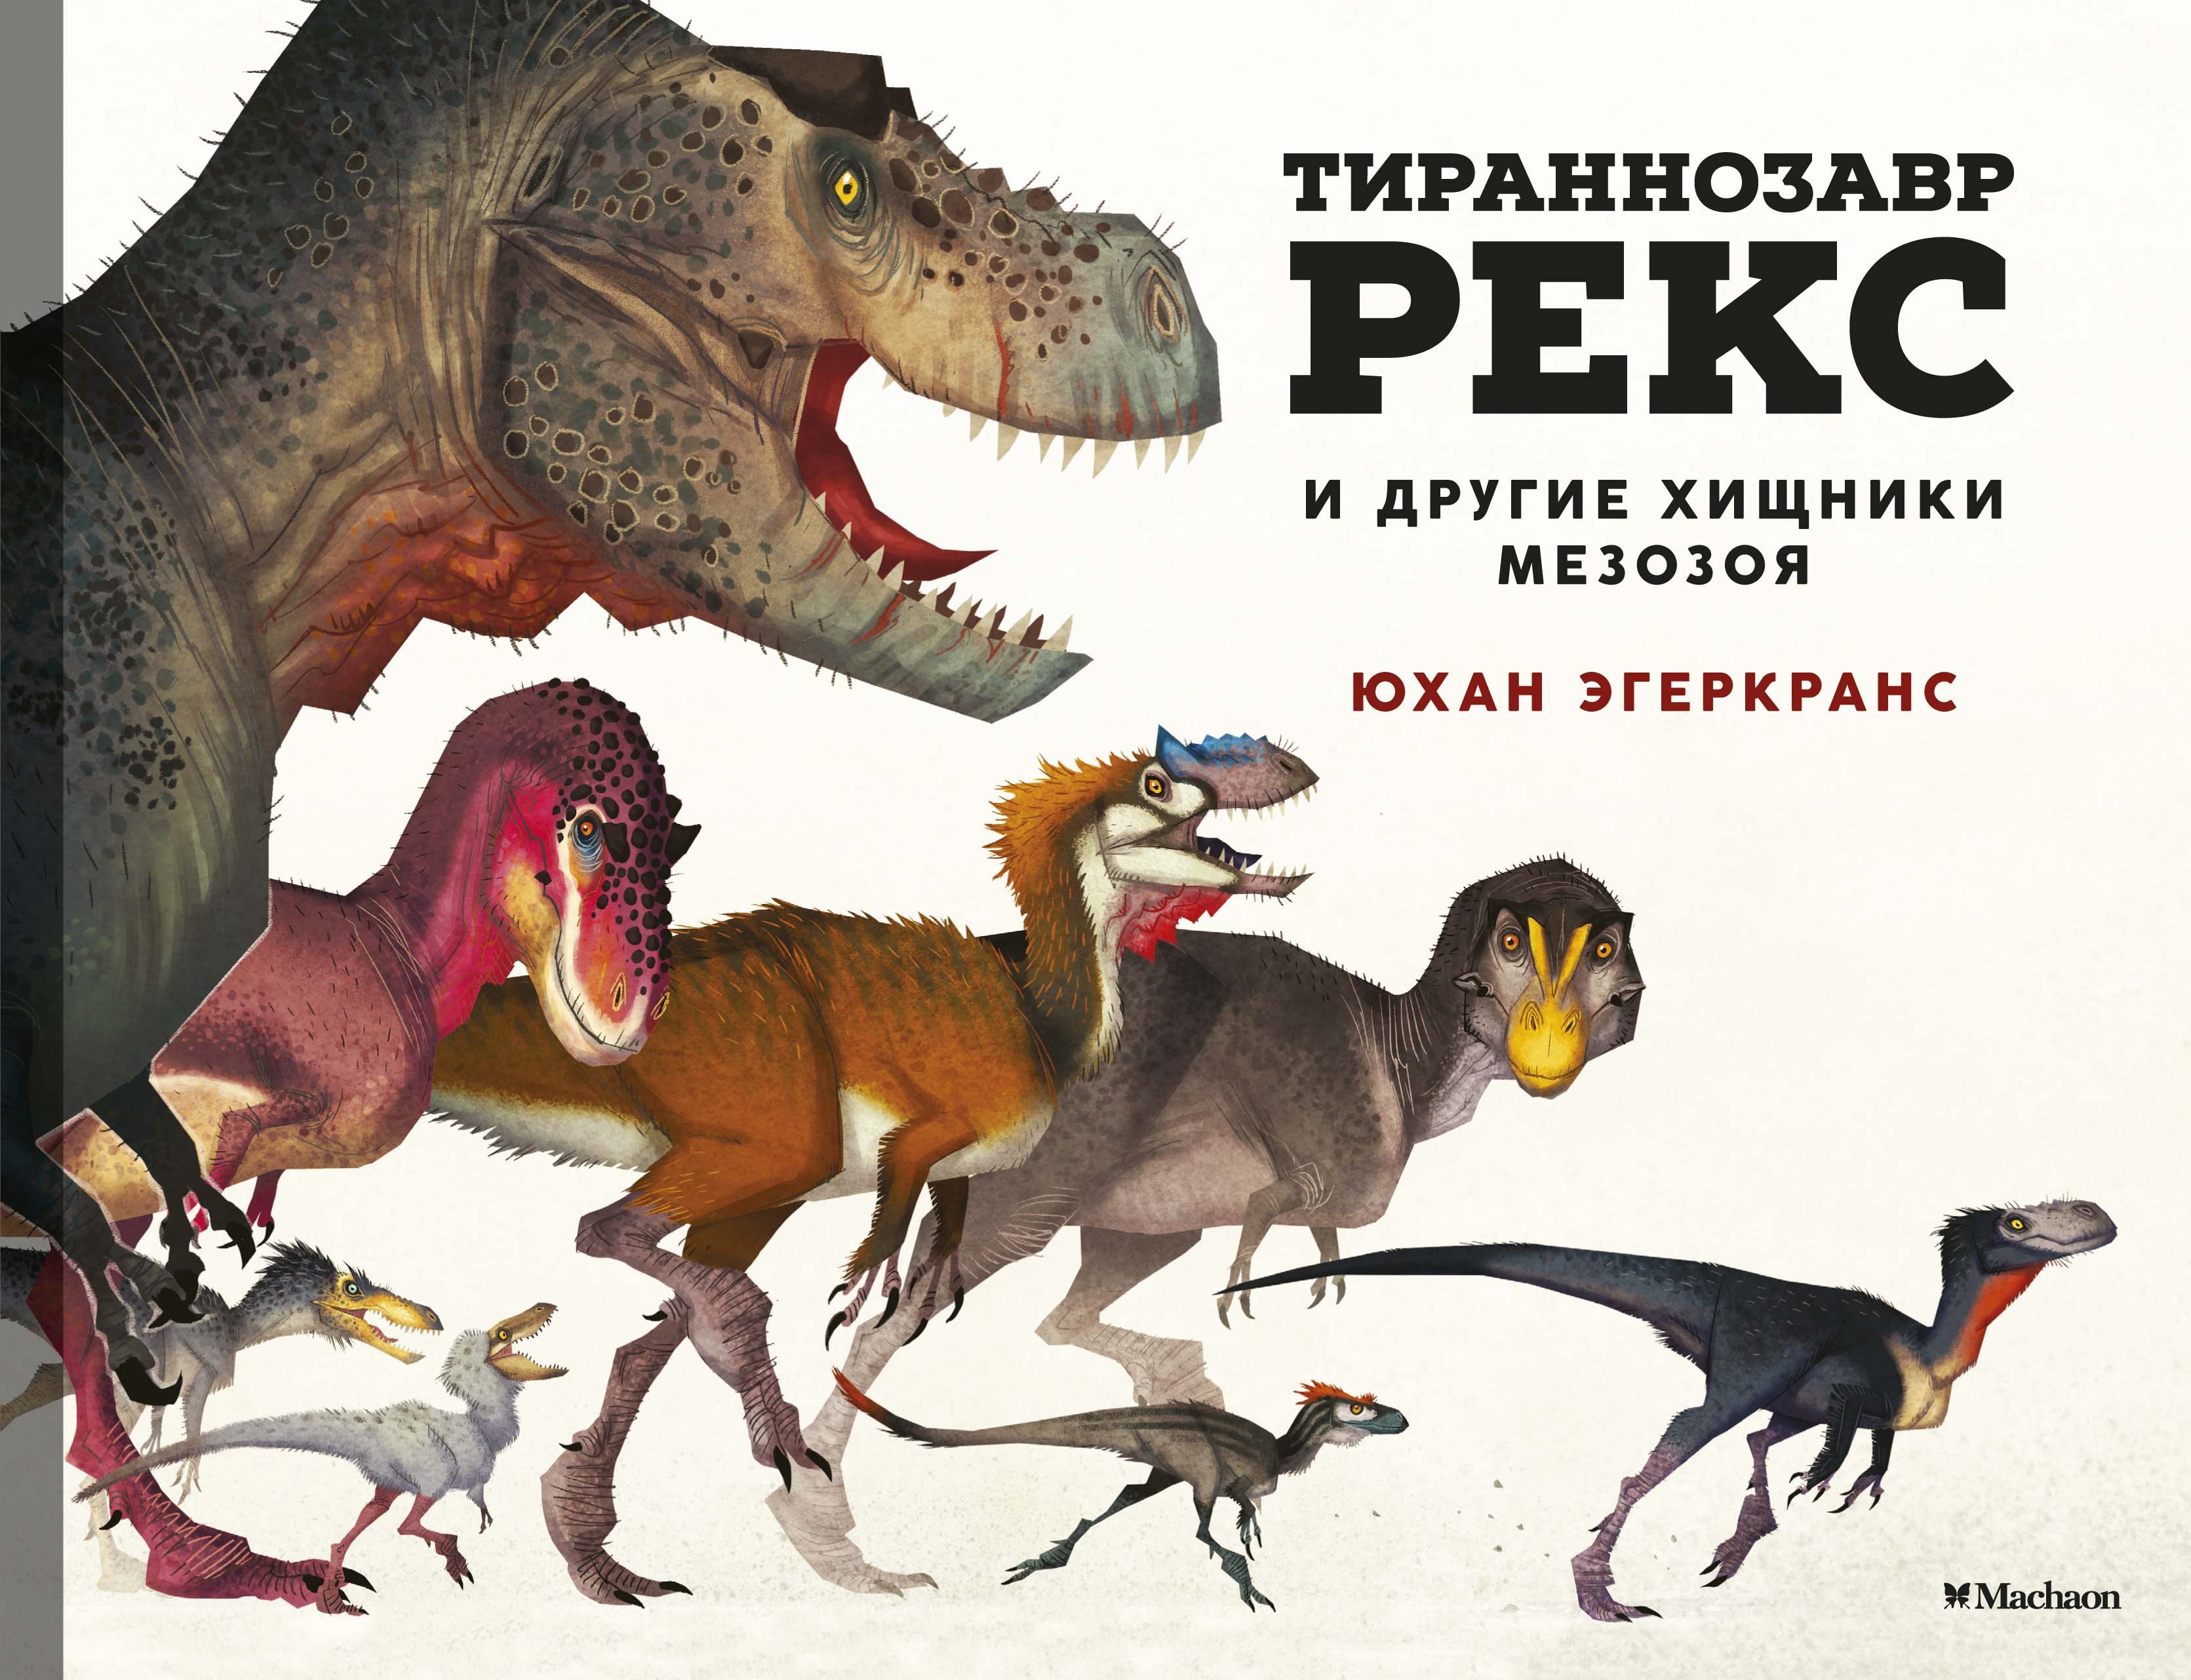 Тираннозавр Рекс и другие хищники мезозоя. Эгеркранс Юхан